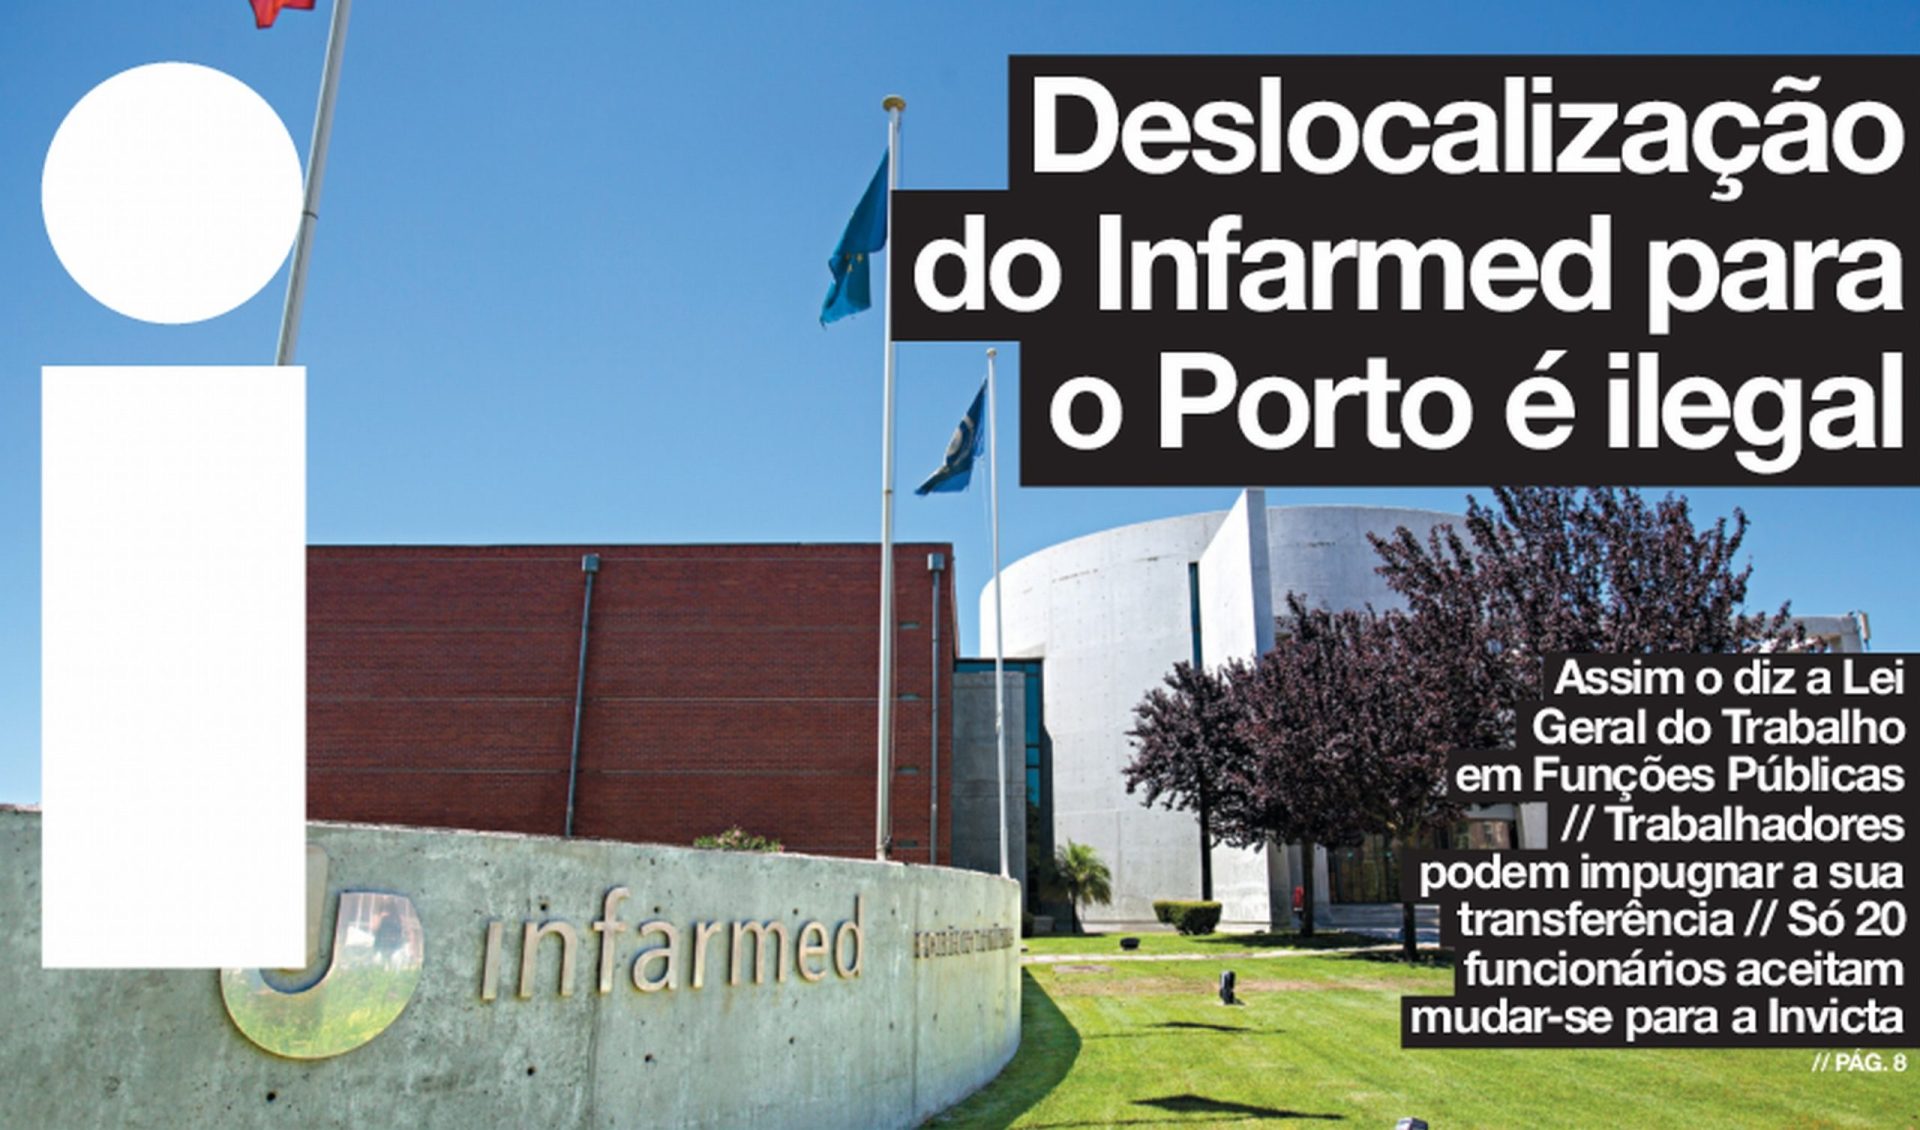 Garcia Pereira confirma notícia do i sobre ilegalidade da deslocalização do Infarmed